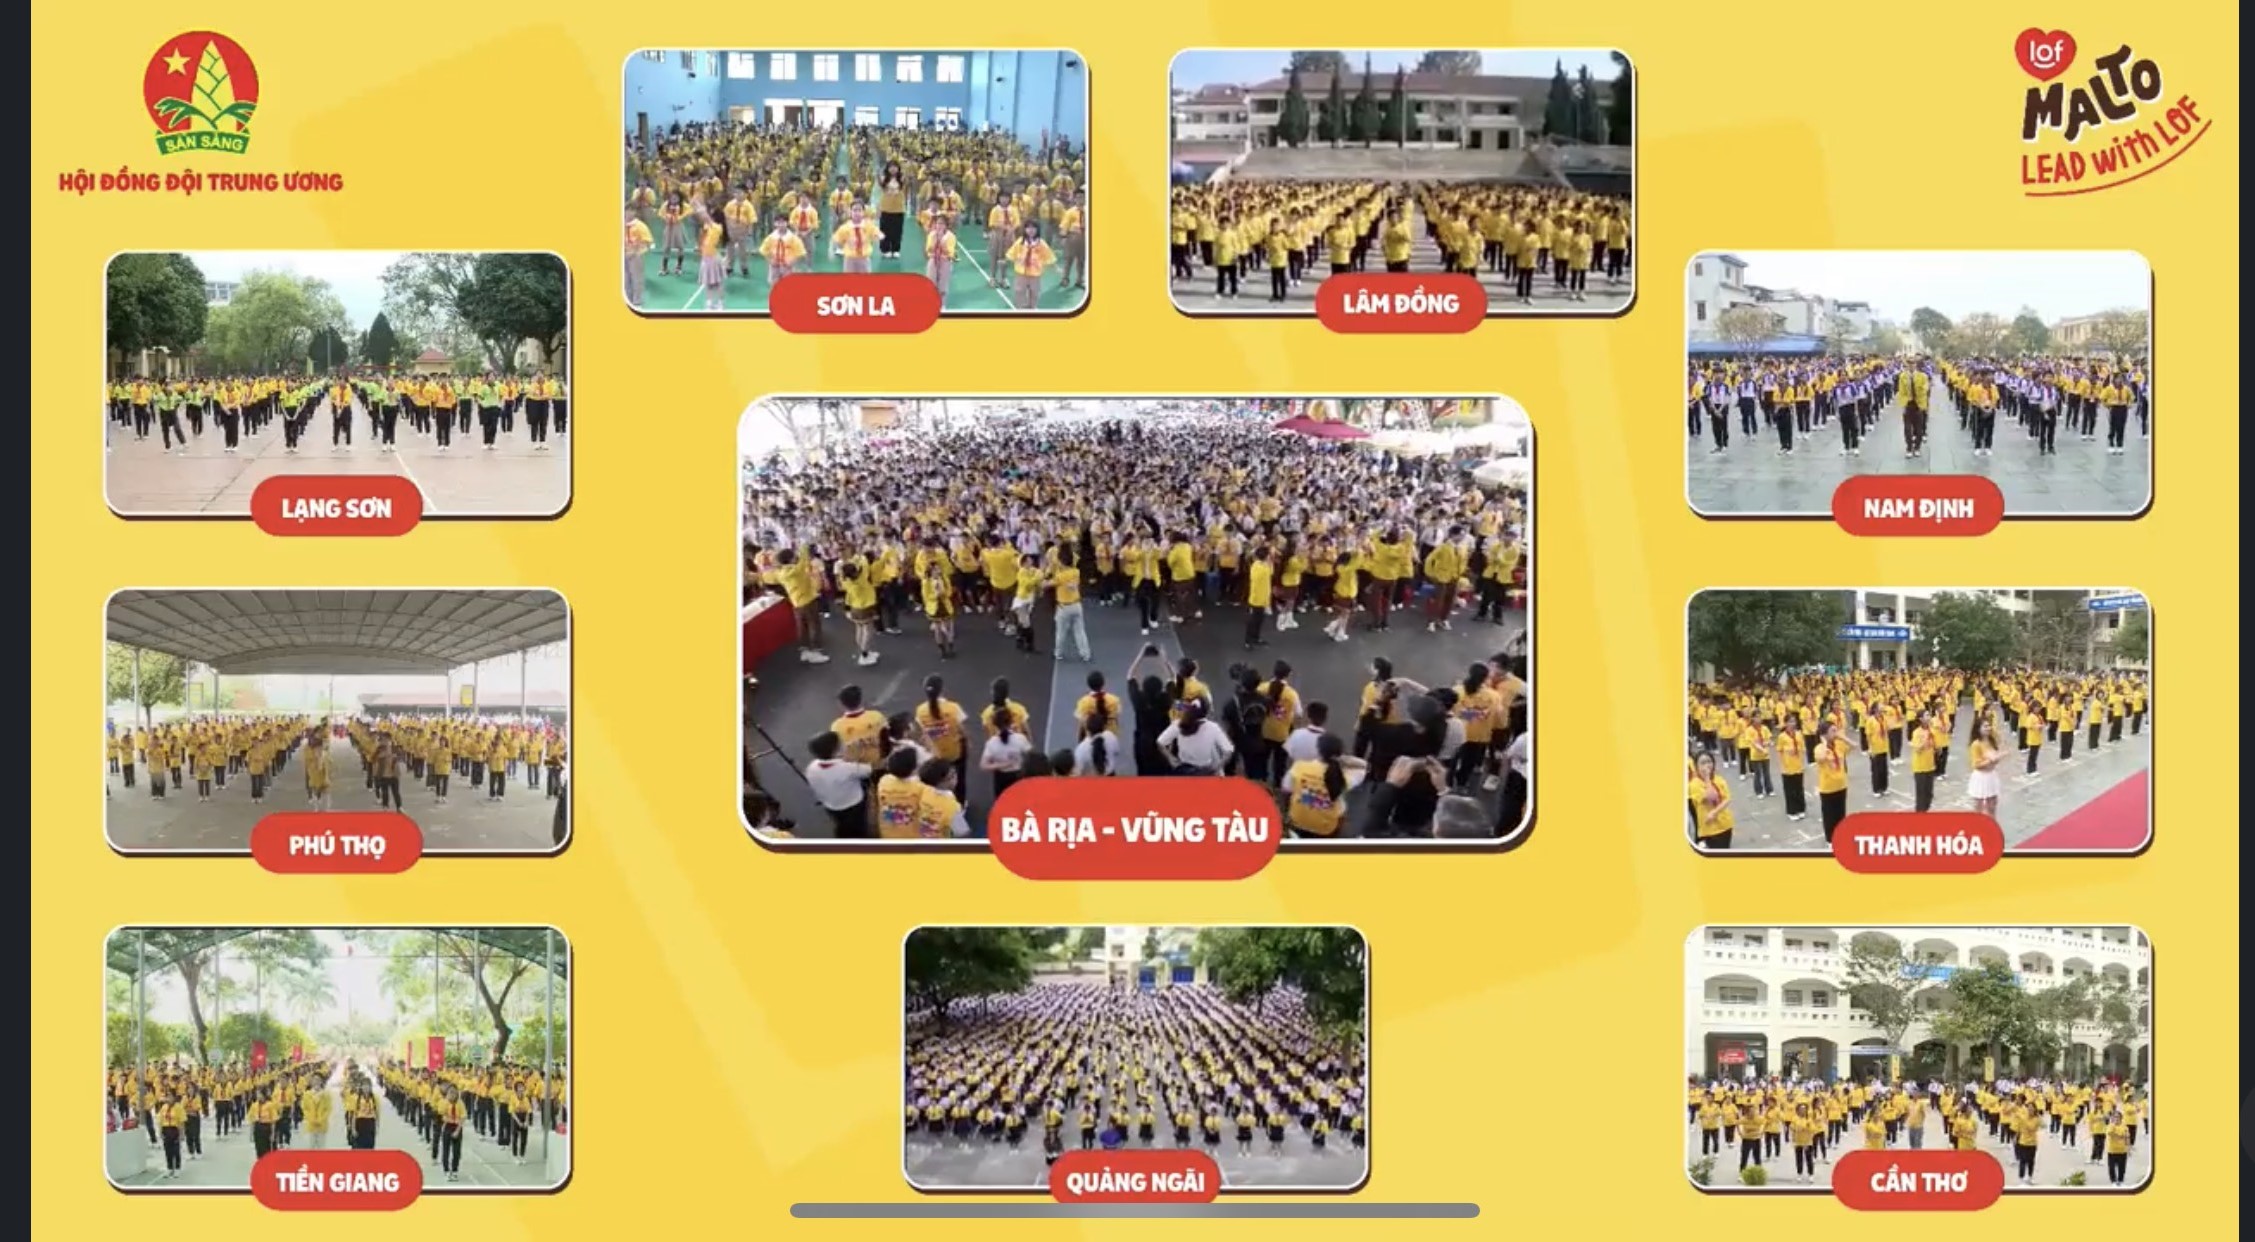 Điểm cầu chính tại Bà Rịa Vũng Tàu quy tụ hơn 3.000 em học sinh đến từ 6 trường trung học cơ sở trong tỉnh.